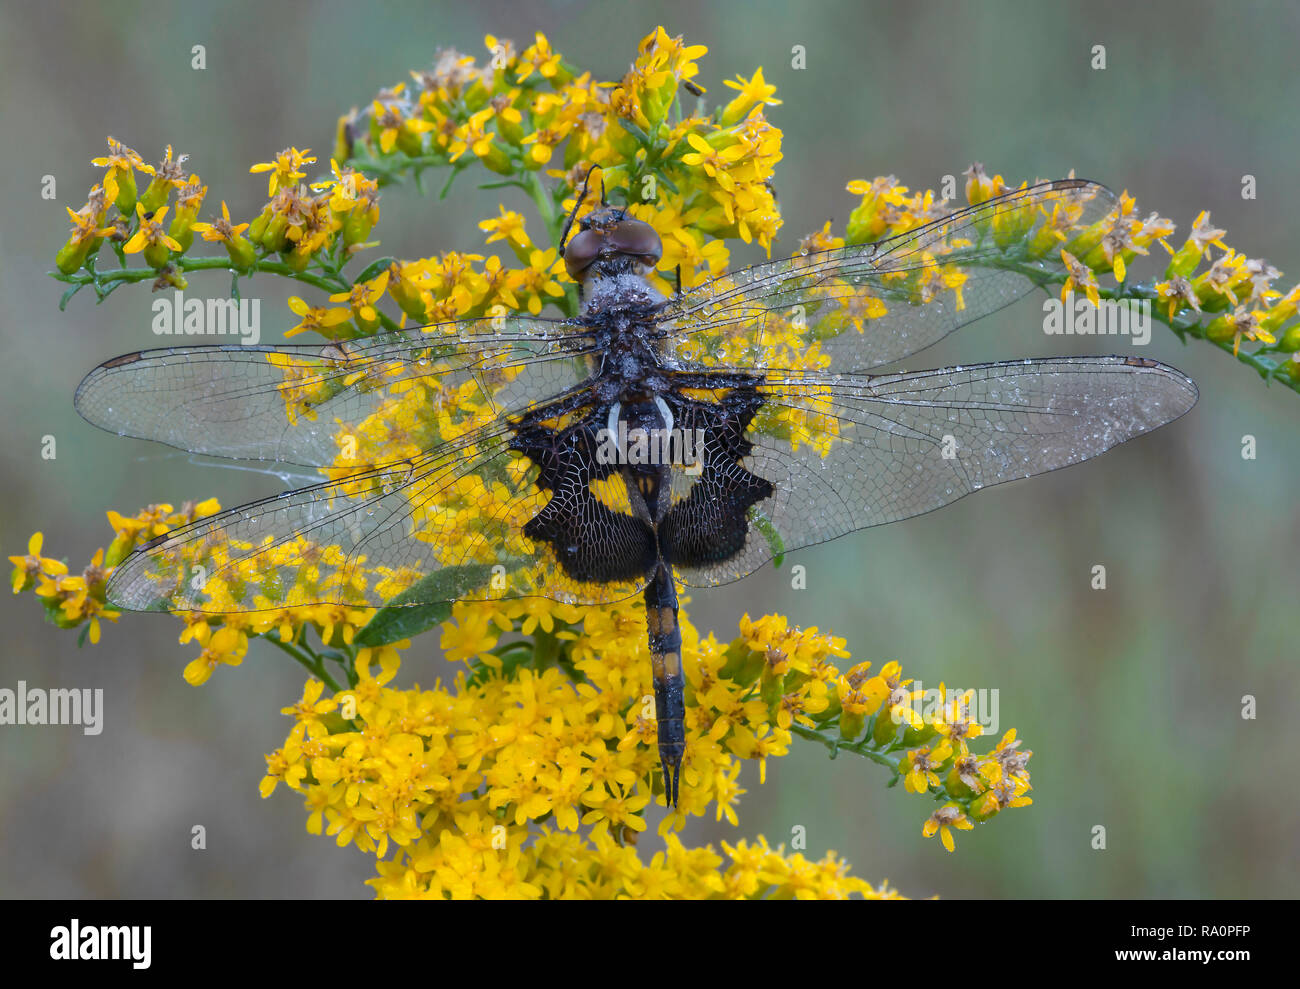 Sacoches noires Skimmer libellule (Tramea lacerata), reposant sur la verge d'or, l'automne, E USA, par aller Moody/Dembinsky Assoc Photo Banque D'Images